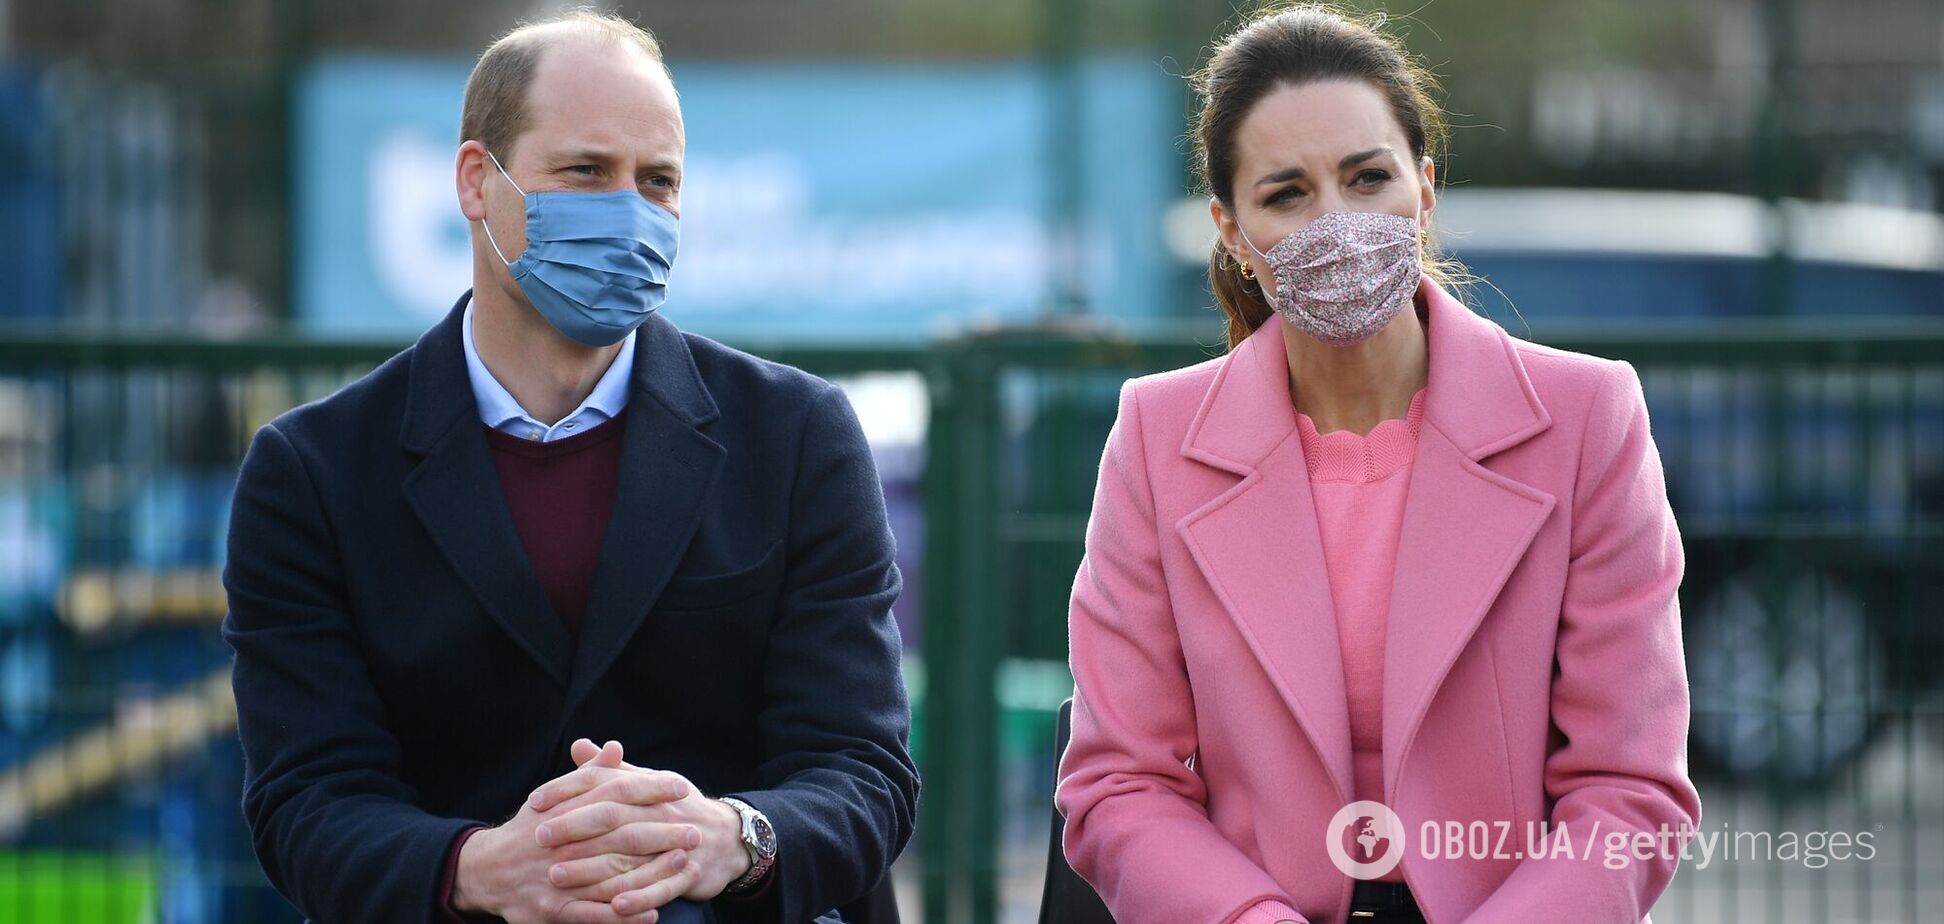 Принц Уильям и Кейт Миддлтон покинули дворец после скандального интервью Опре